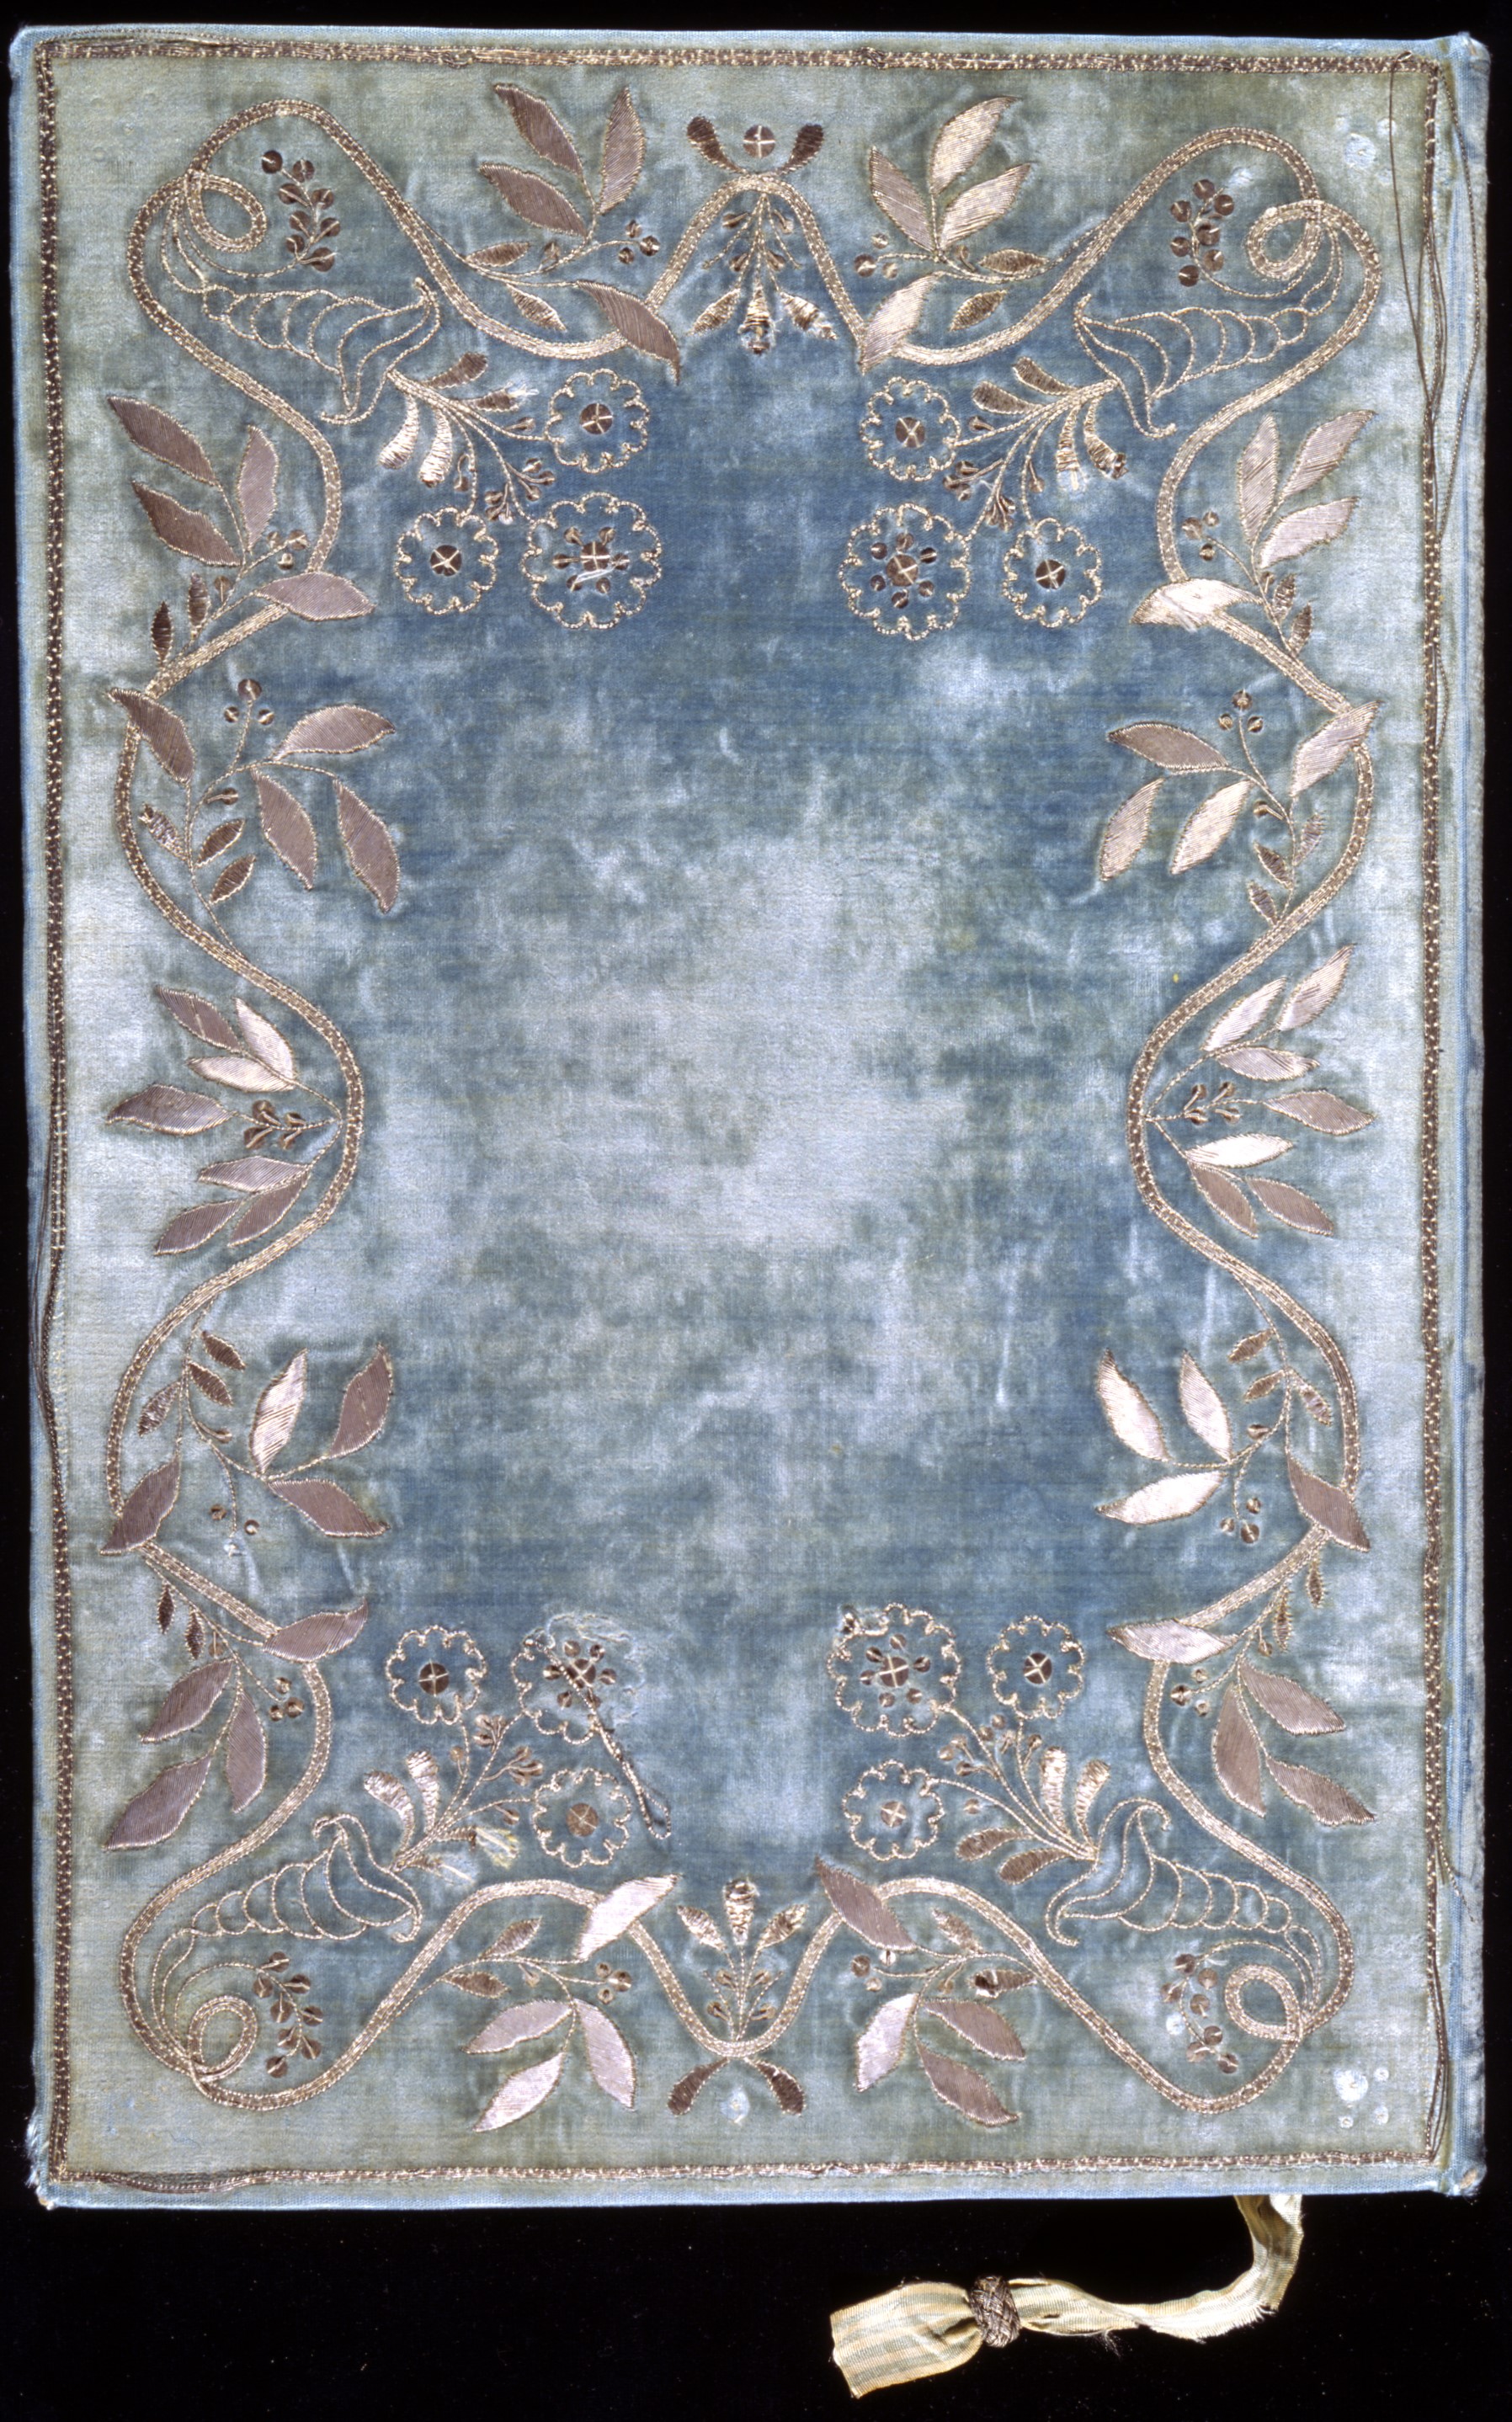 Constituição de 1822. Papel, tinta, veludo, seda e fio de prata. 30,5 x 25 x 1 cm.